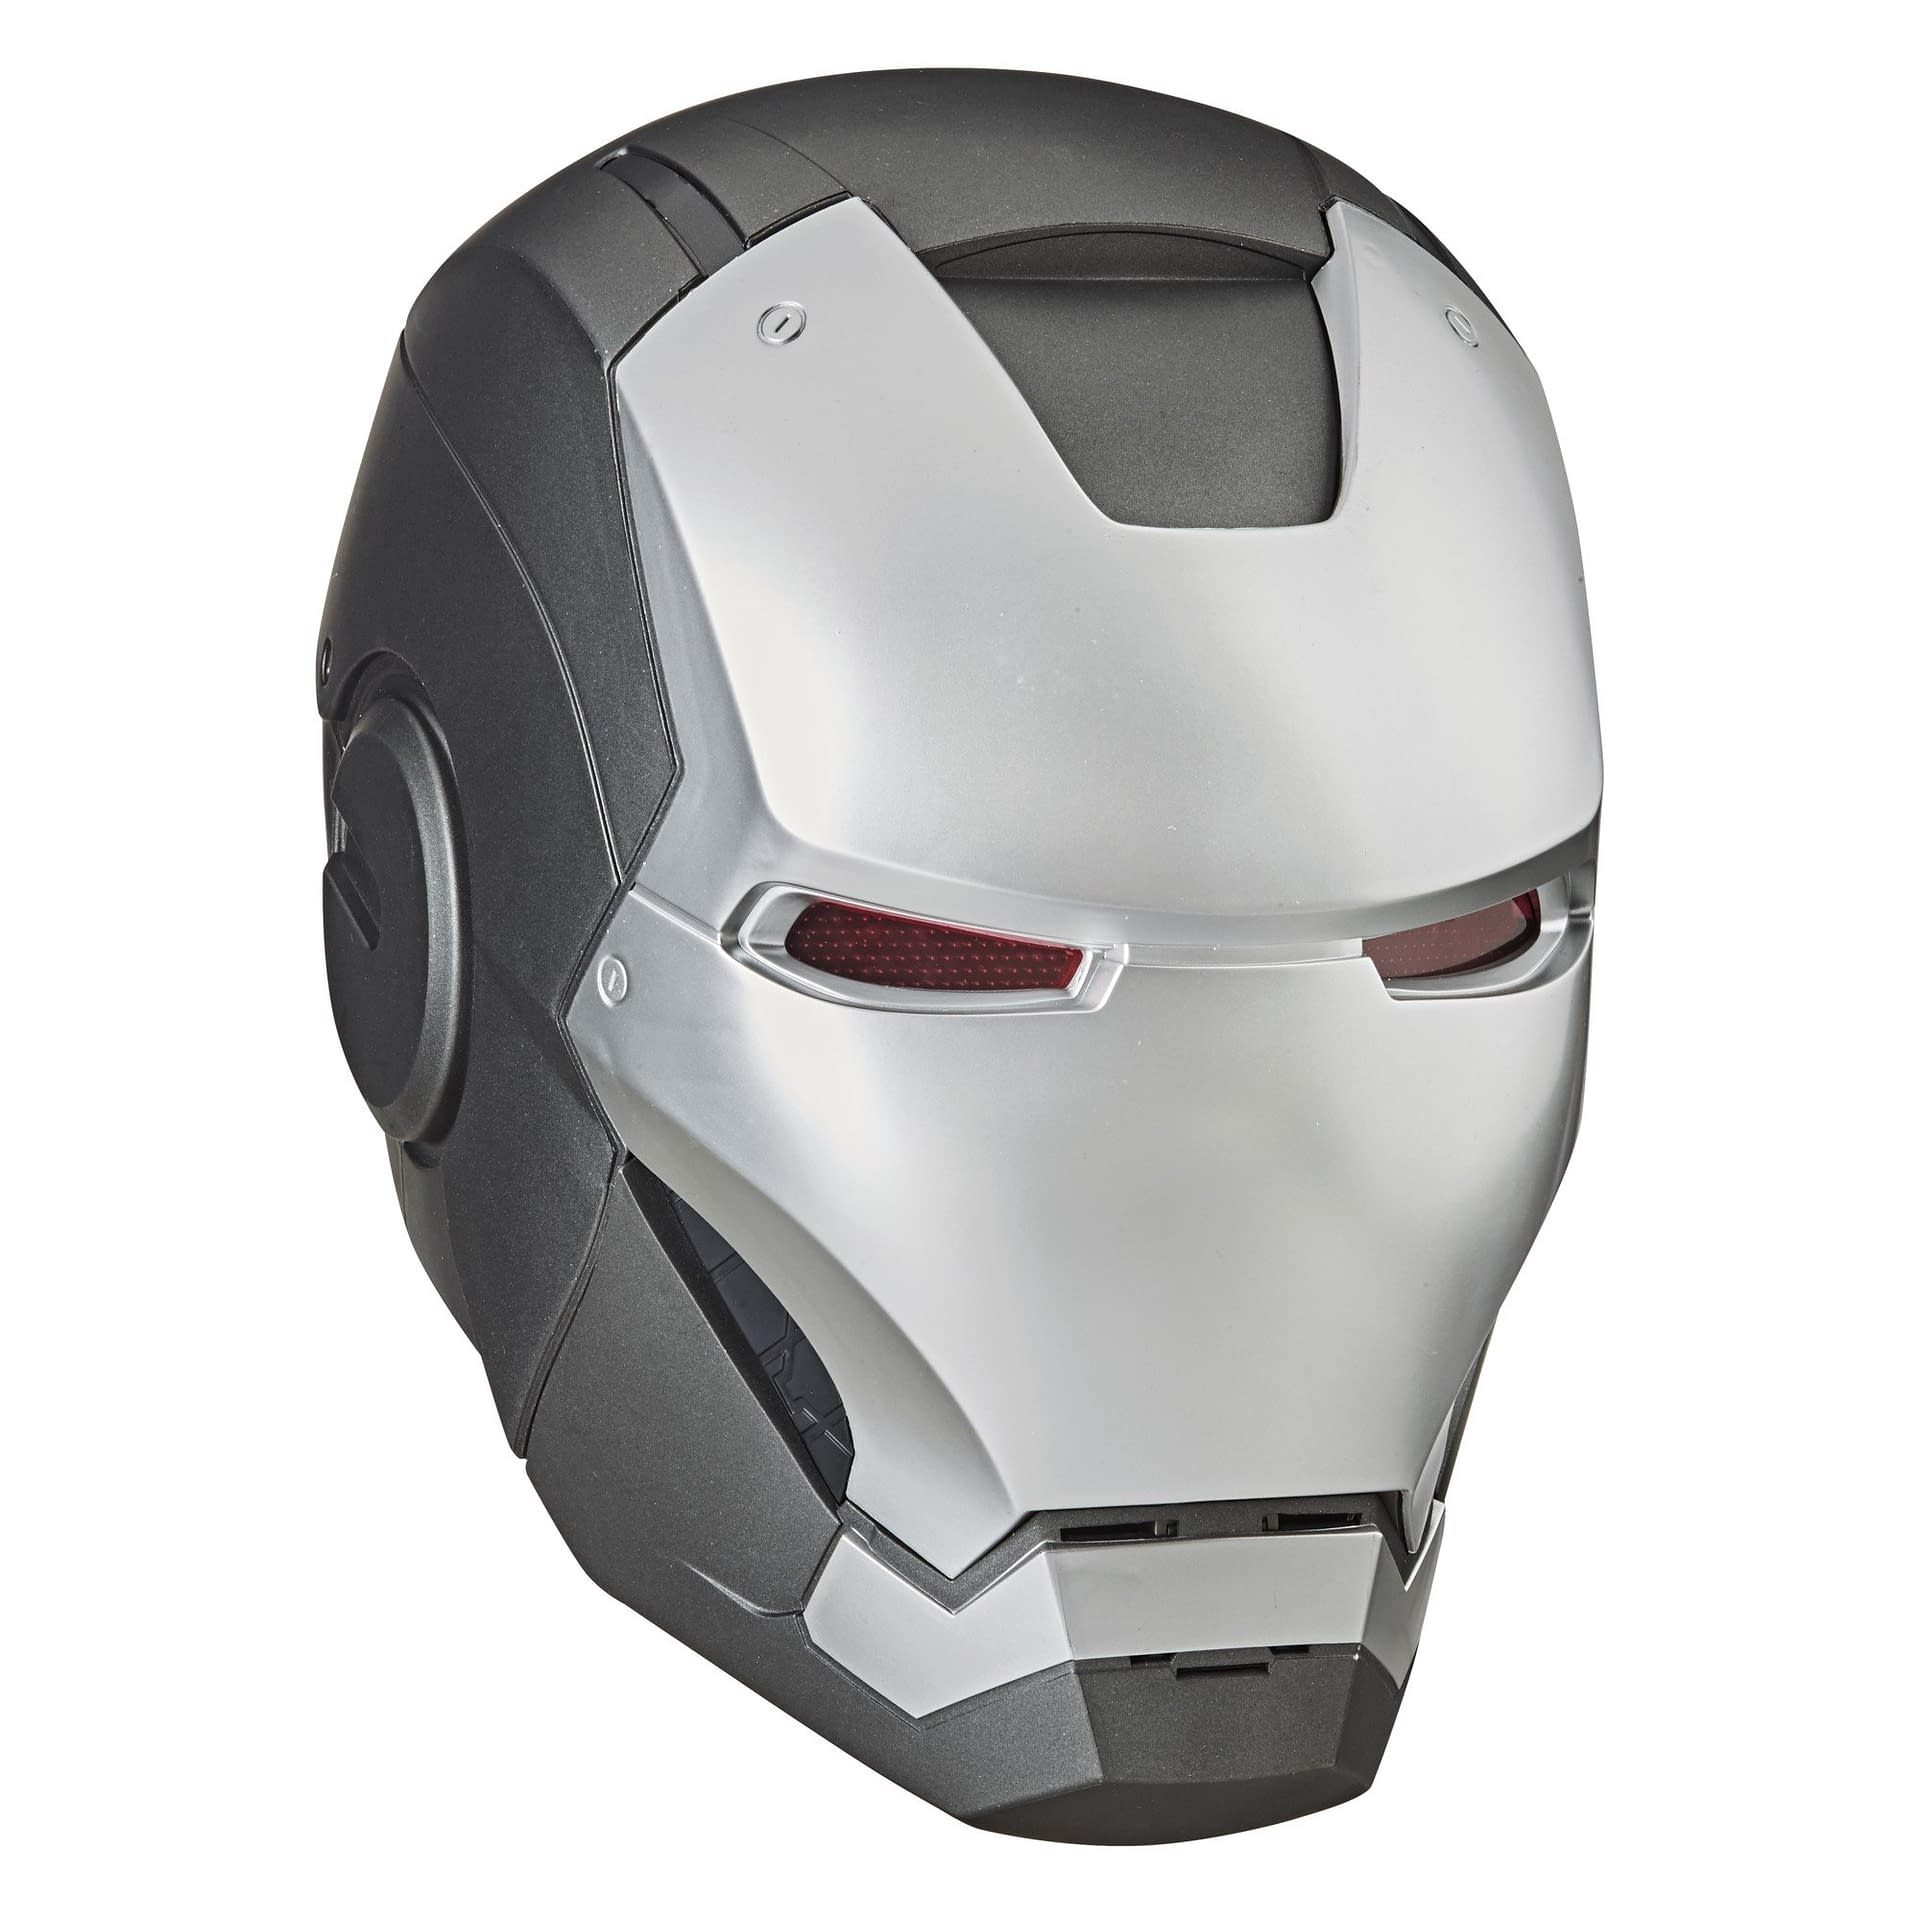 War Machine with New Marvel Legends Replica Helmet